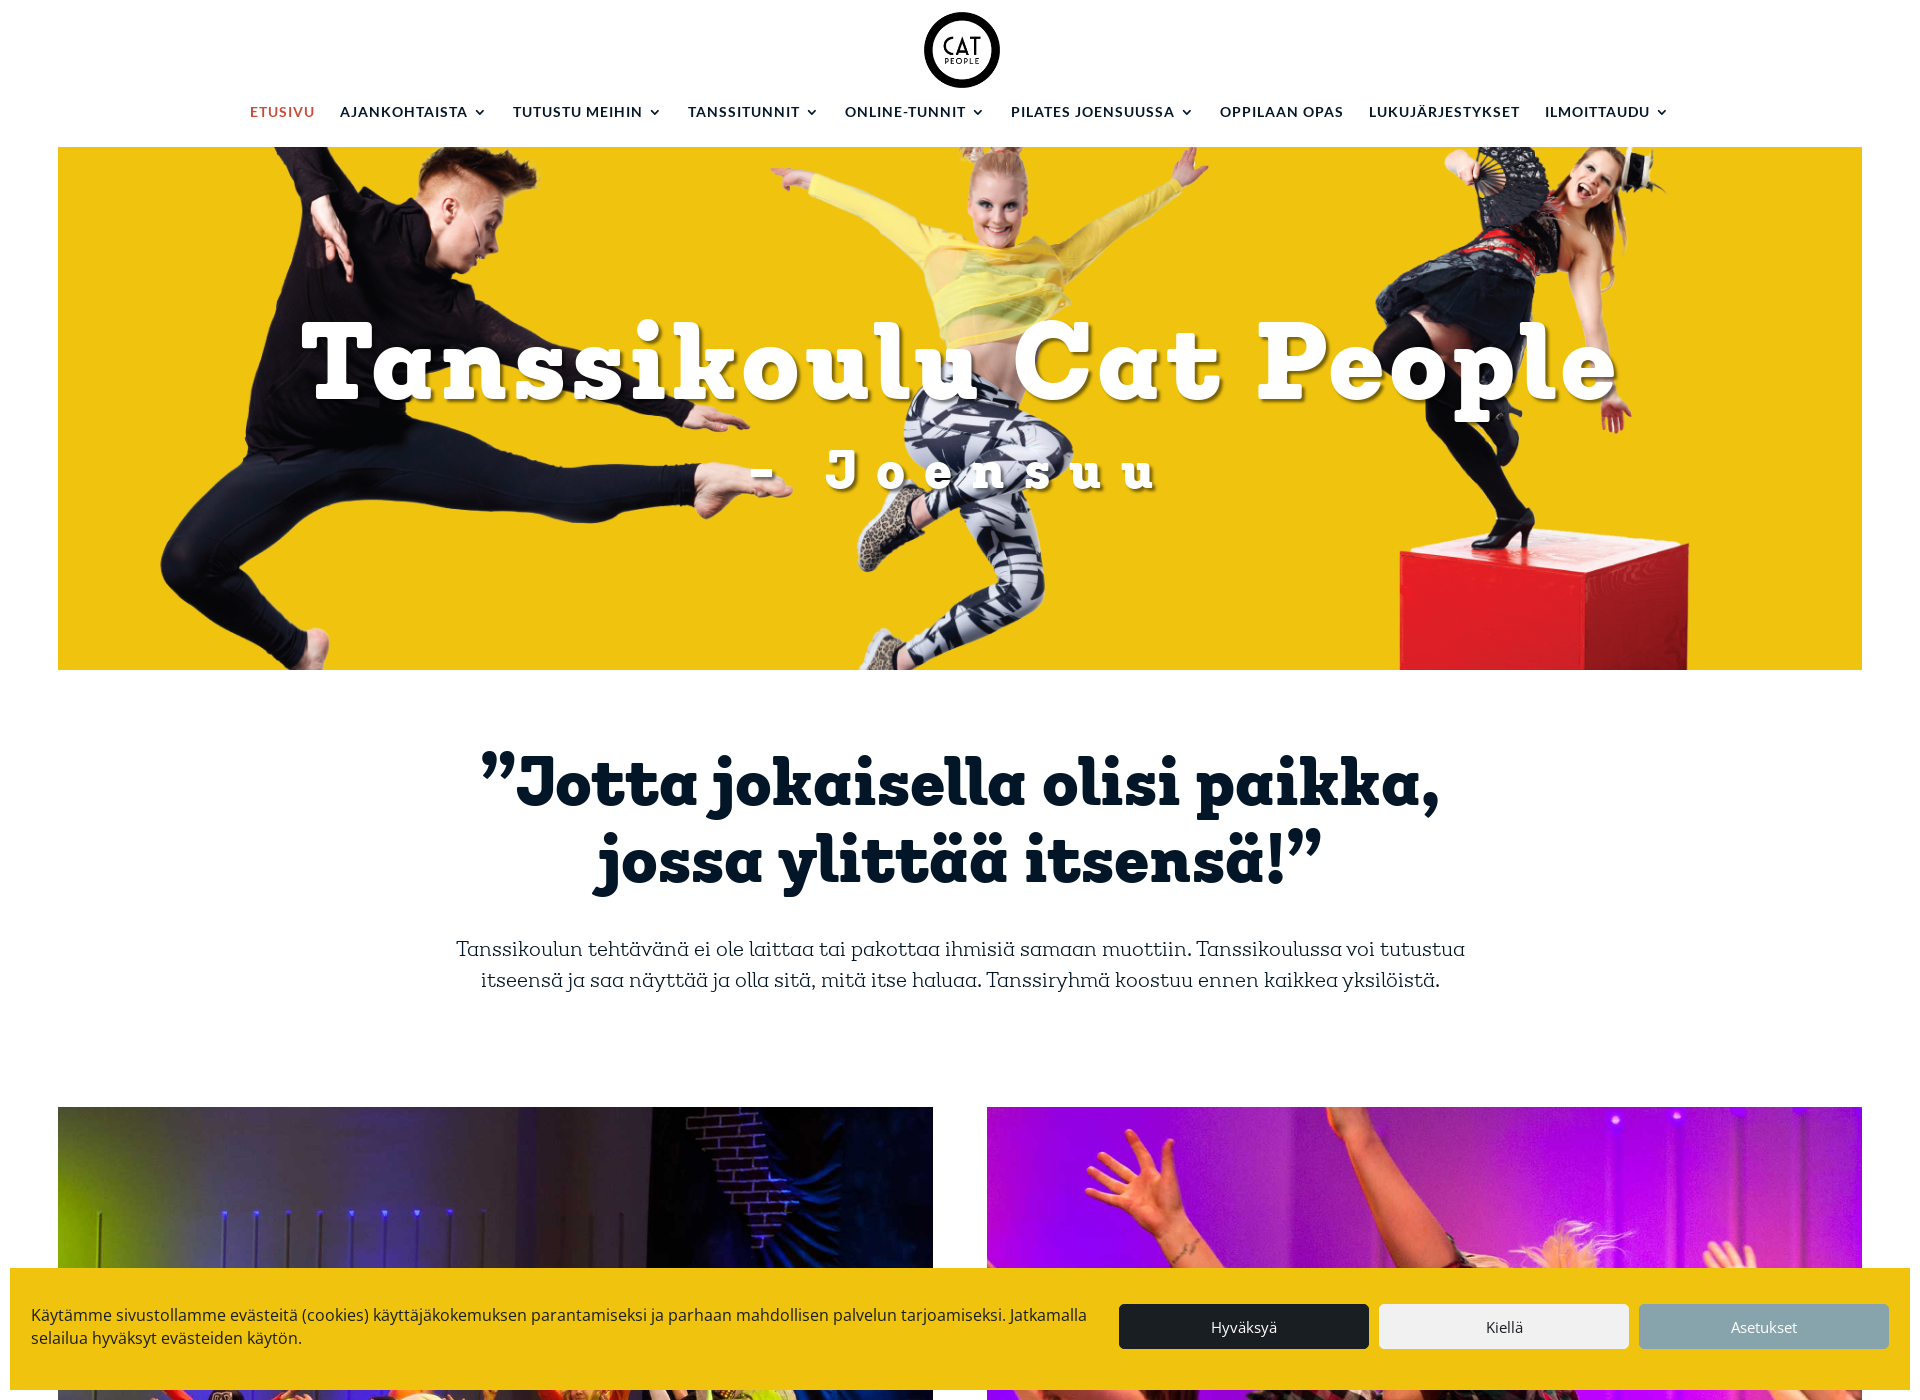 Näyttökuva catpeople.fi